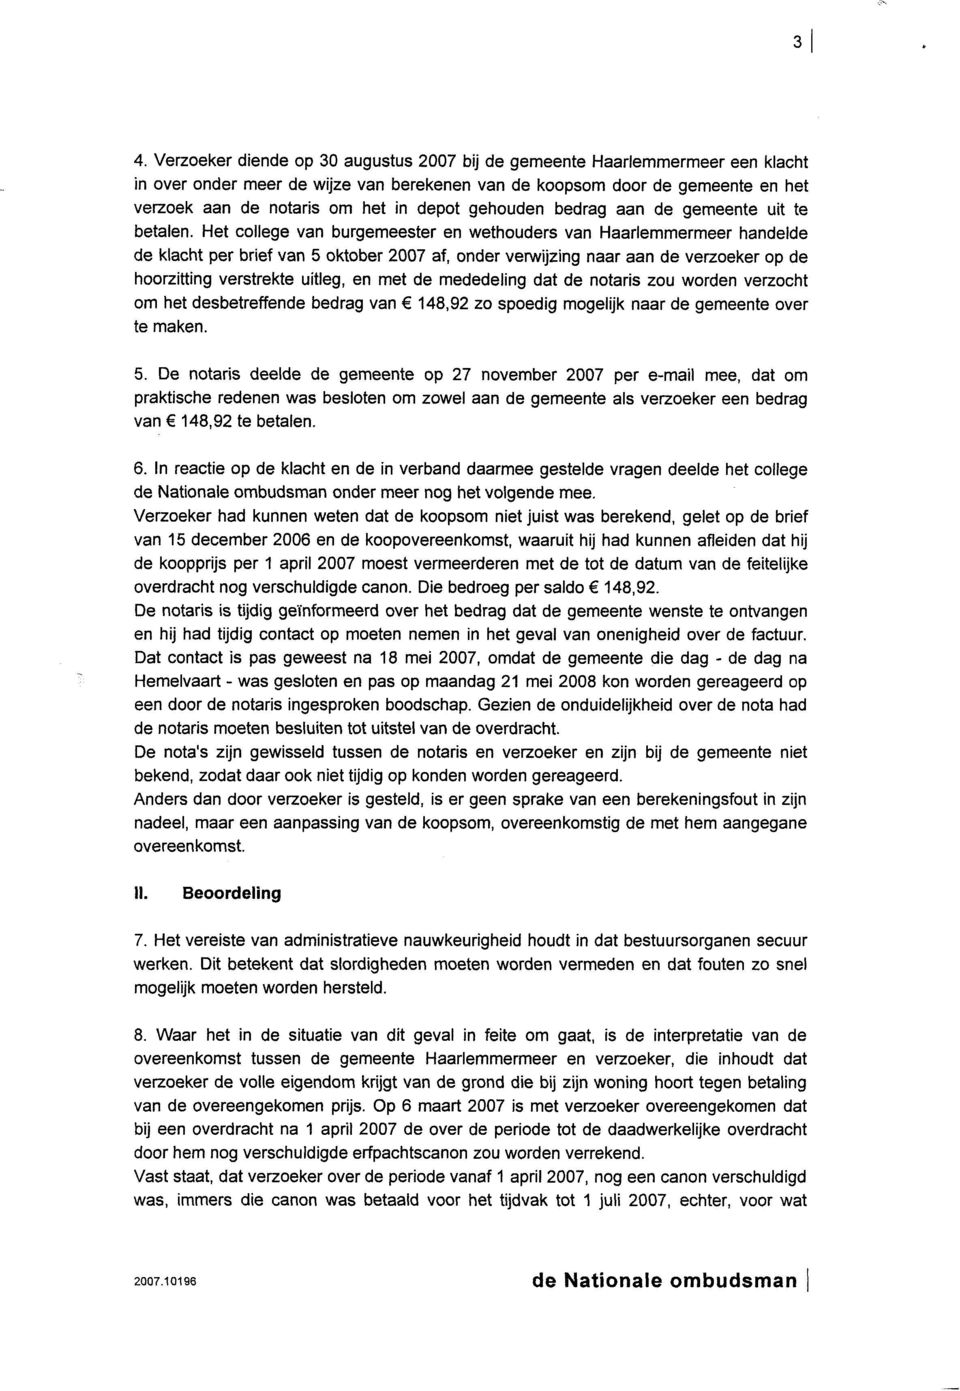 Het college van burgemeester en wethouders van Haarlemmermeer handelde de klacht per brief van 5 oktober 2007 af, onder verwijzing naar aan de verzoeker op de hoorzitting verstrekte uitleg, en met de